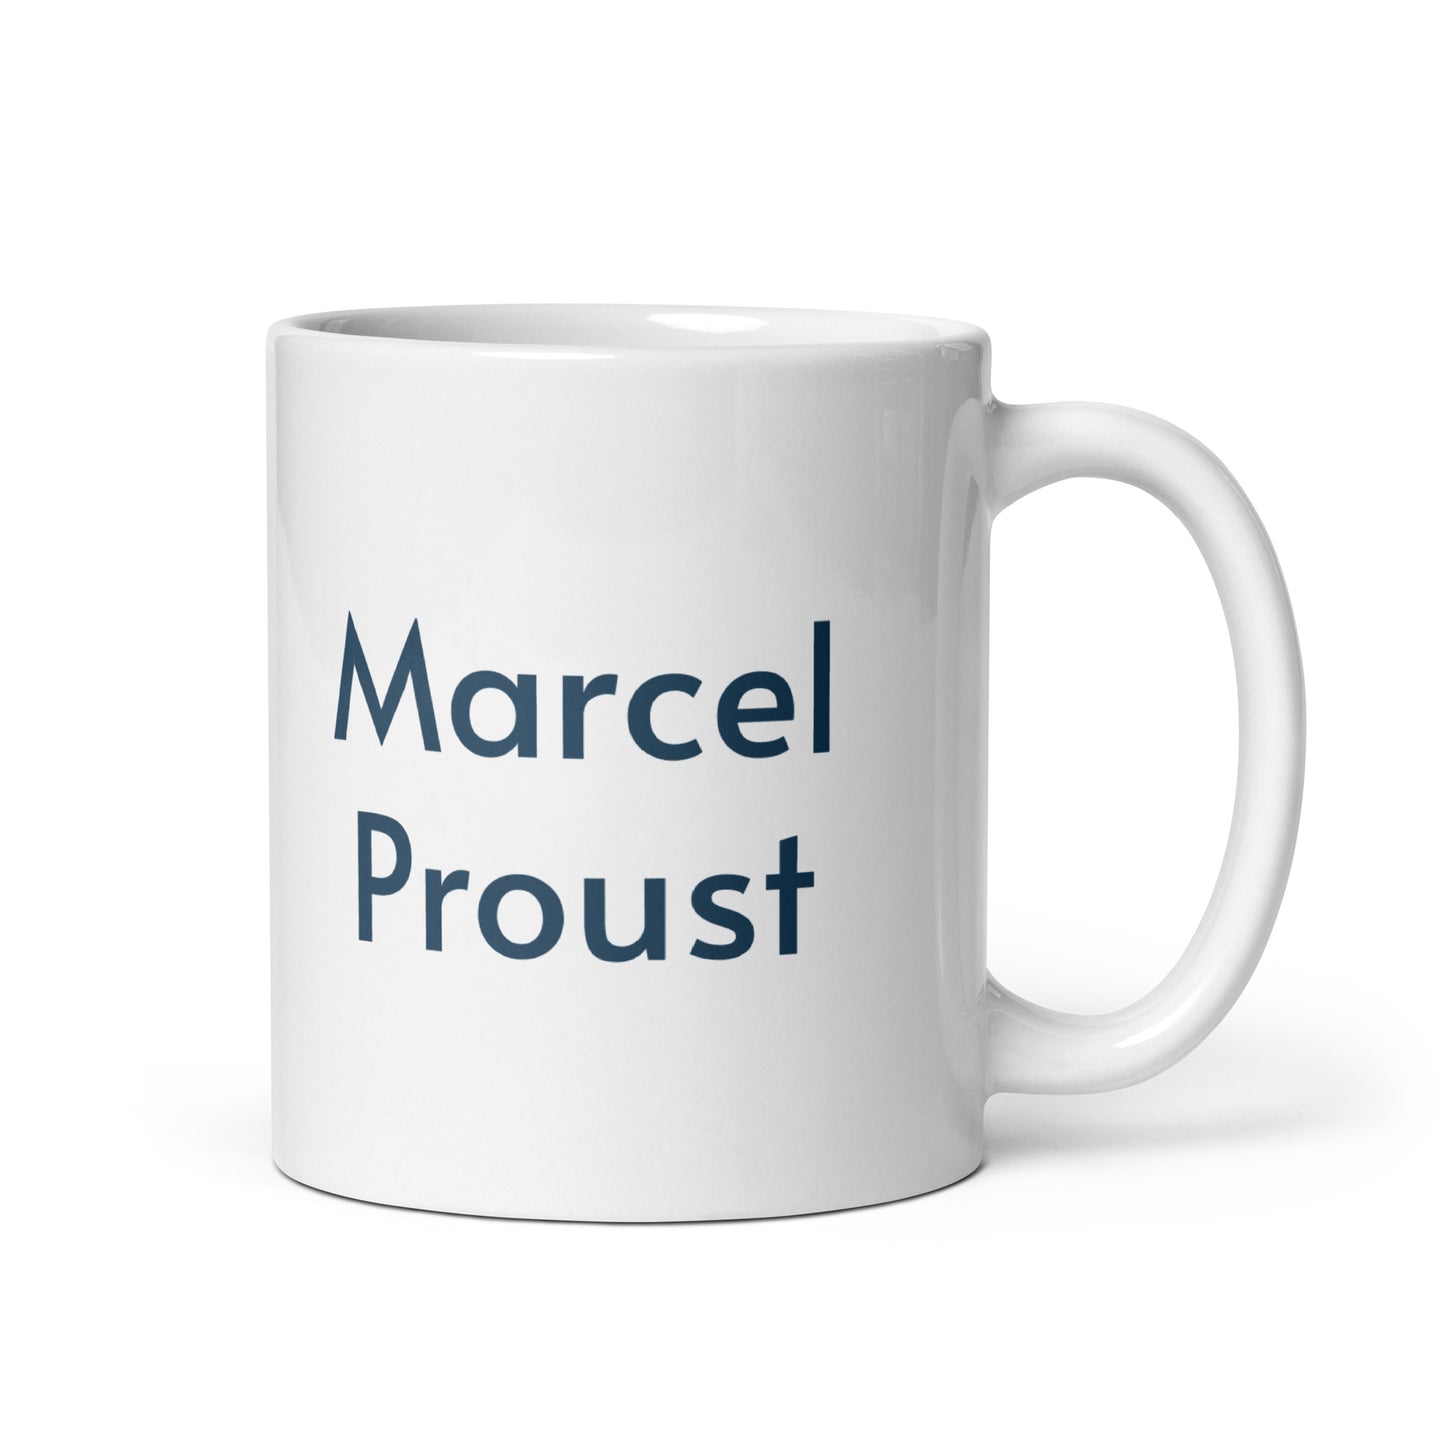 Marcel Proust white glossy mug